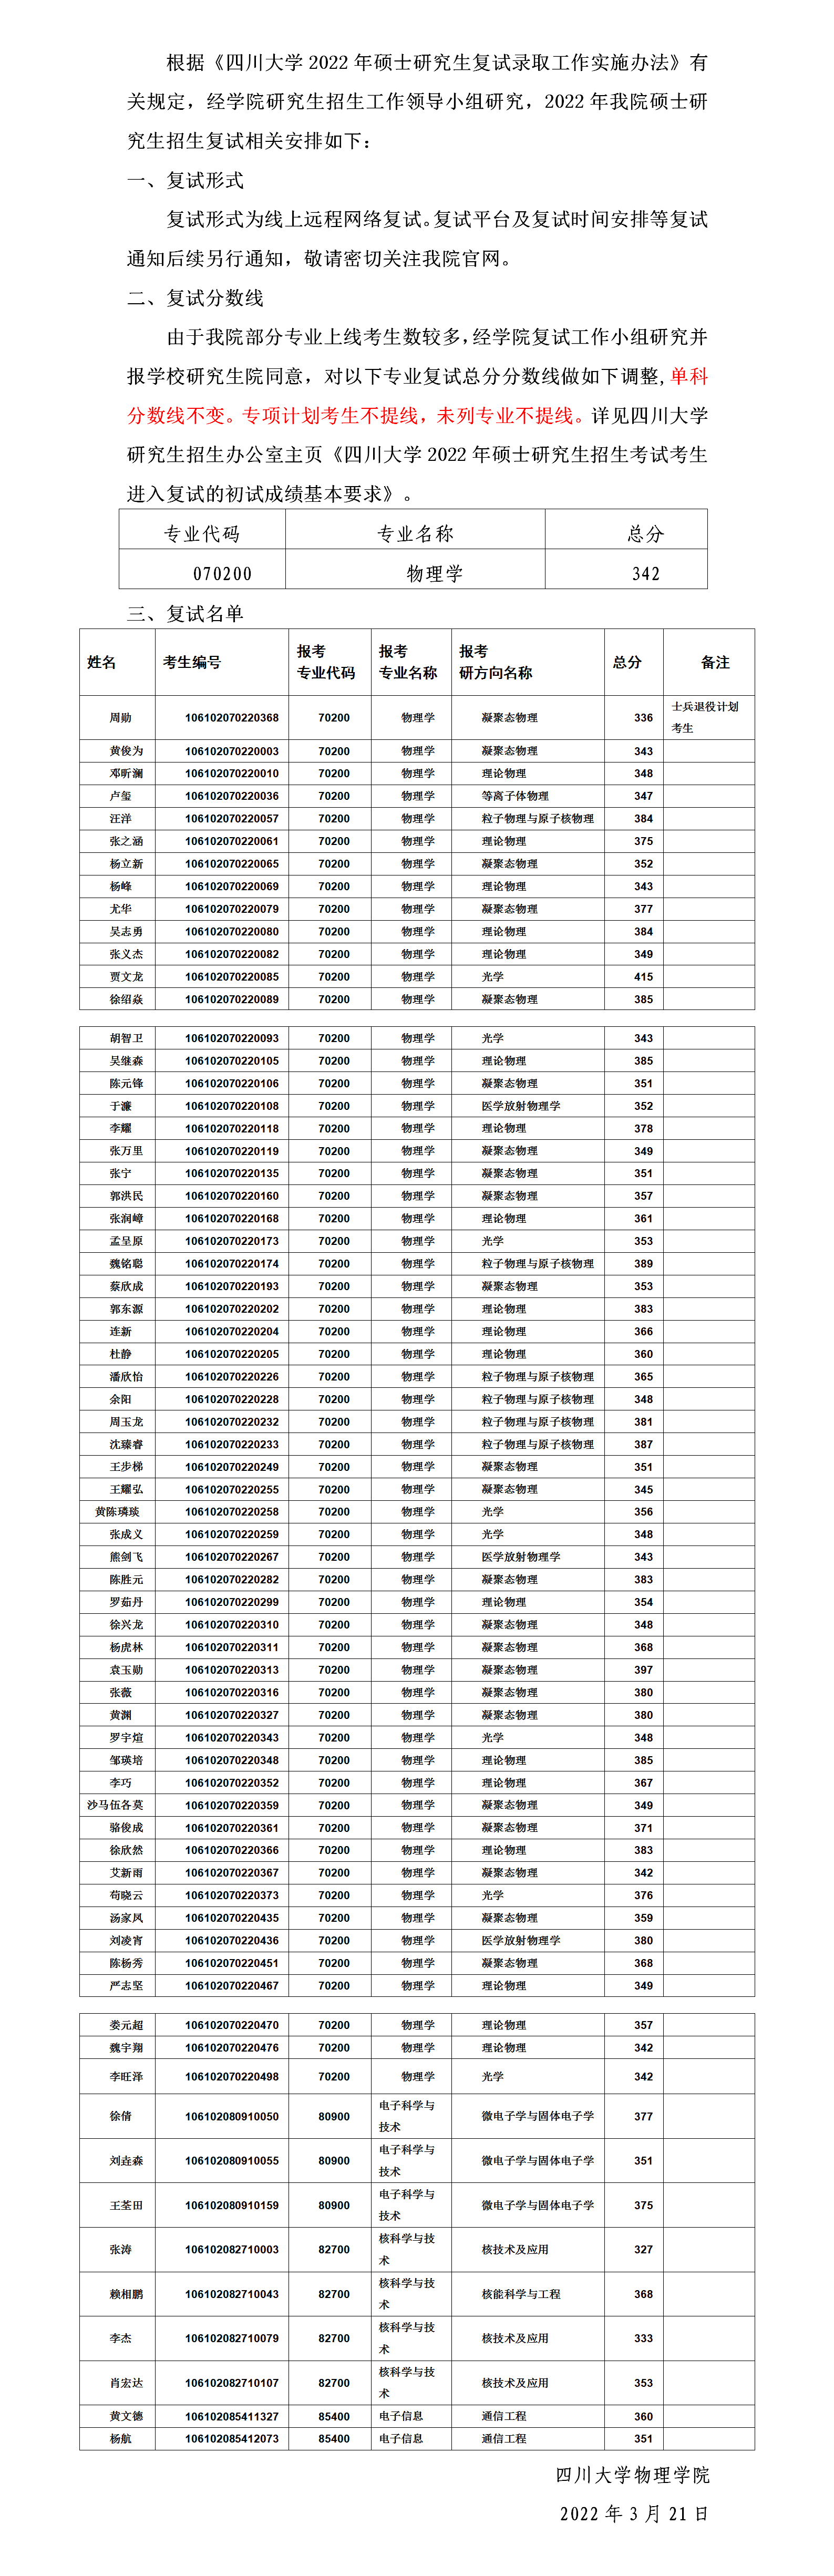 四川大学物理学院2022年硕士研究生各专业复试份数线及上线名单_01.png